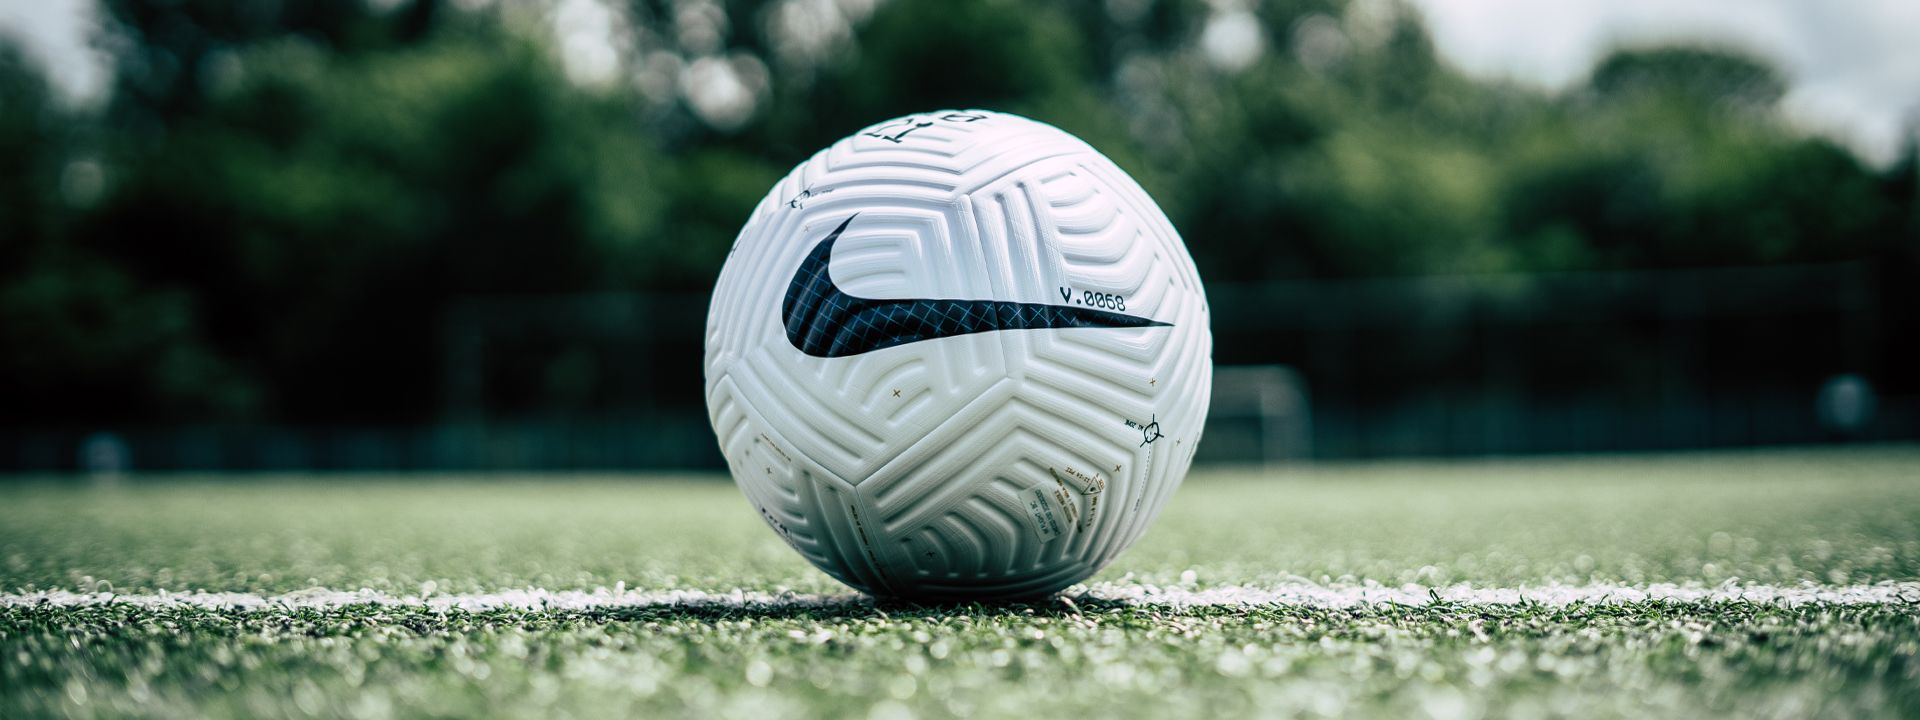 De liefde voor voetbal begint de bal en Nike brengt de beste voetbal Voetbalshop.be